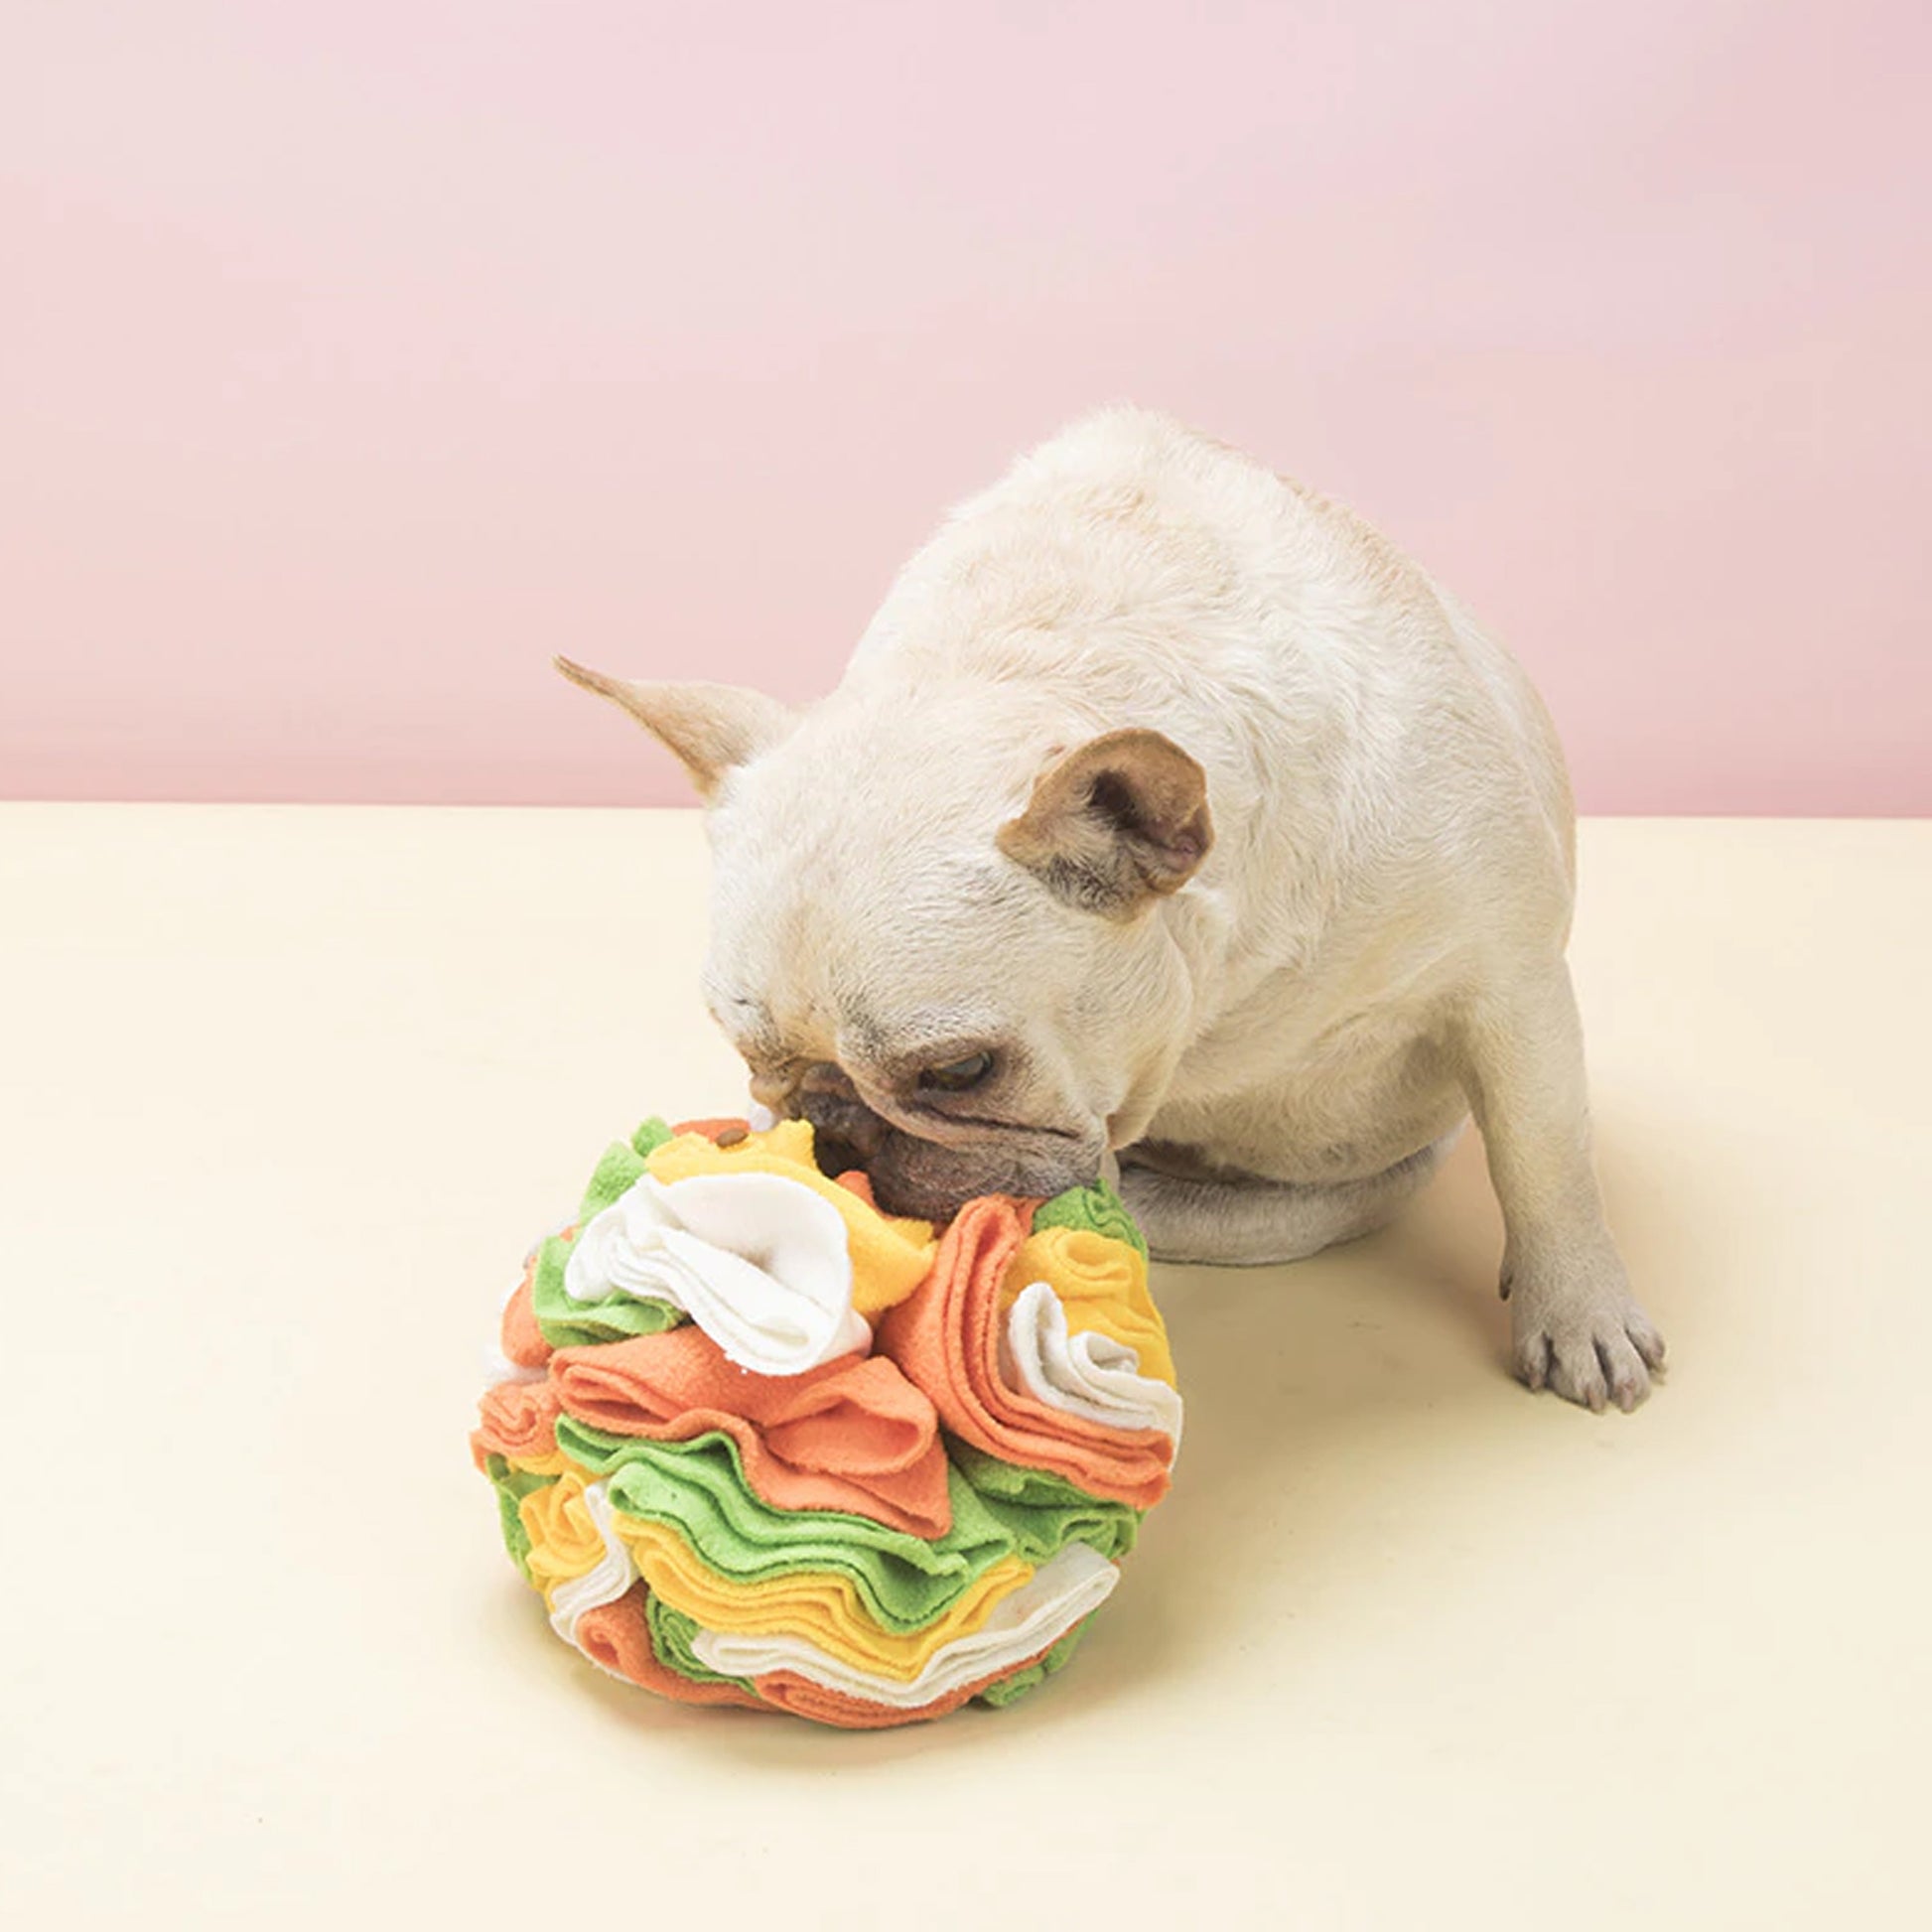 Fleece Snuffle Ball Nosework Dog Toy – WOOFELITE